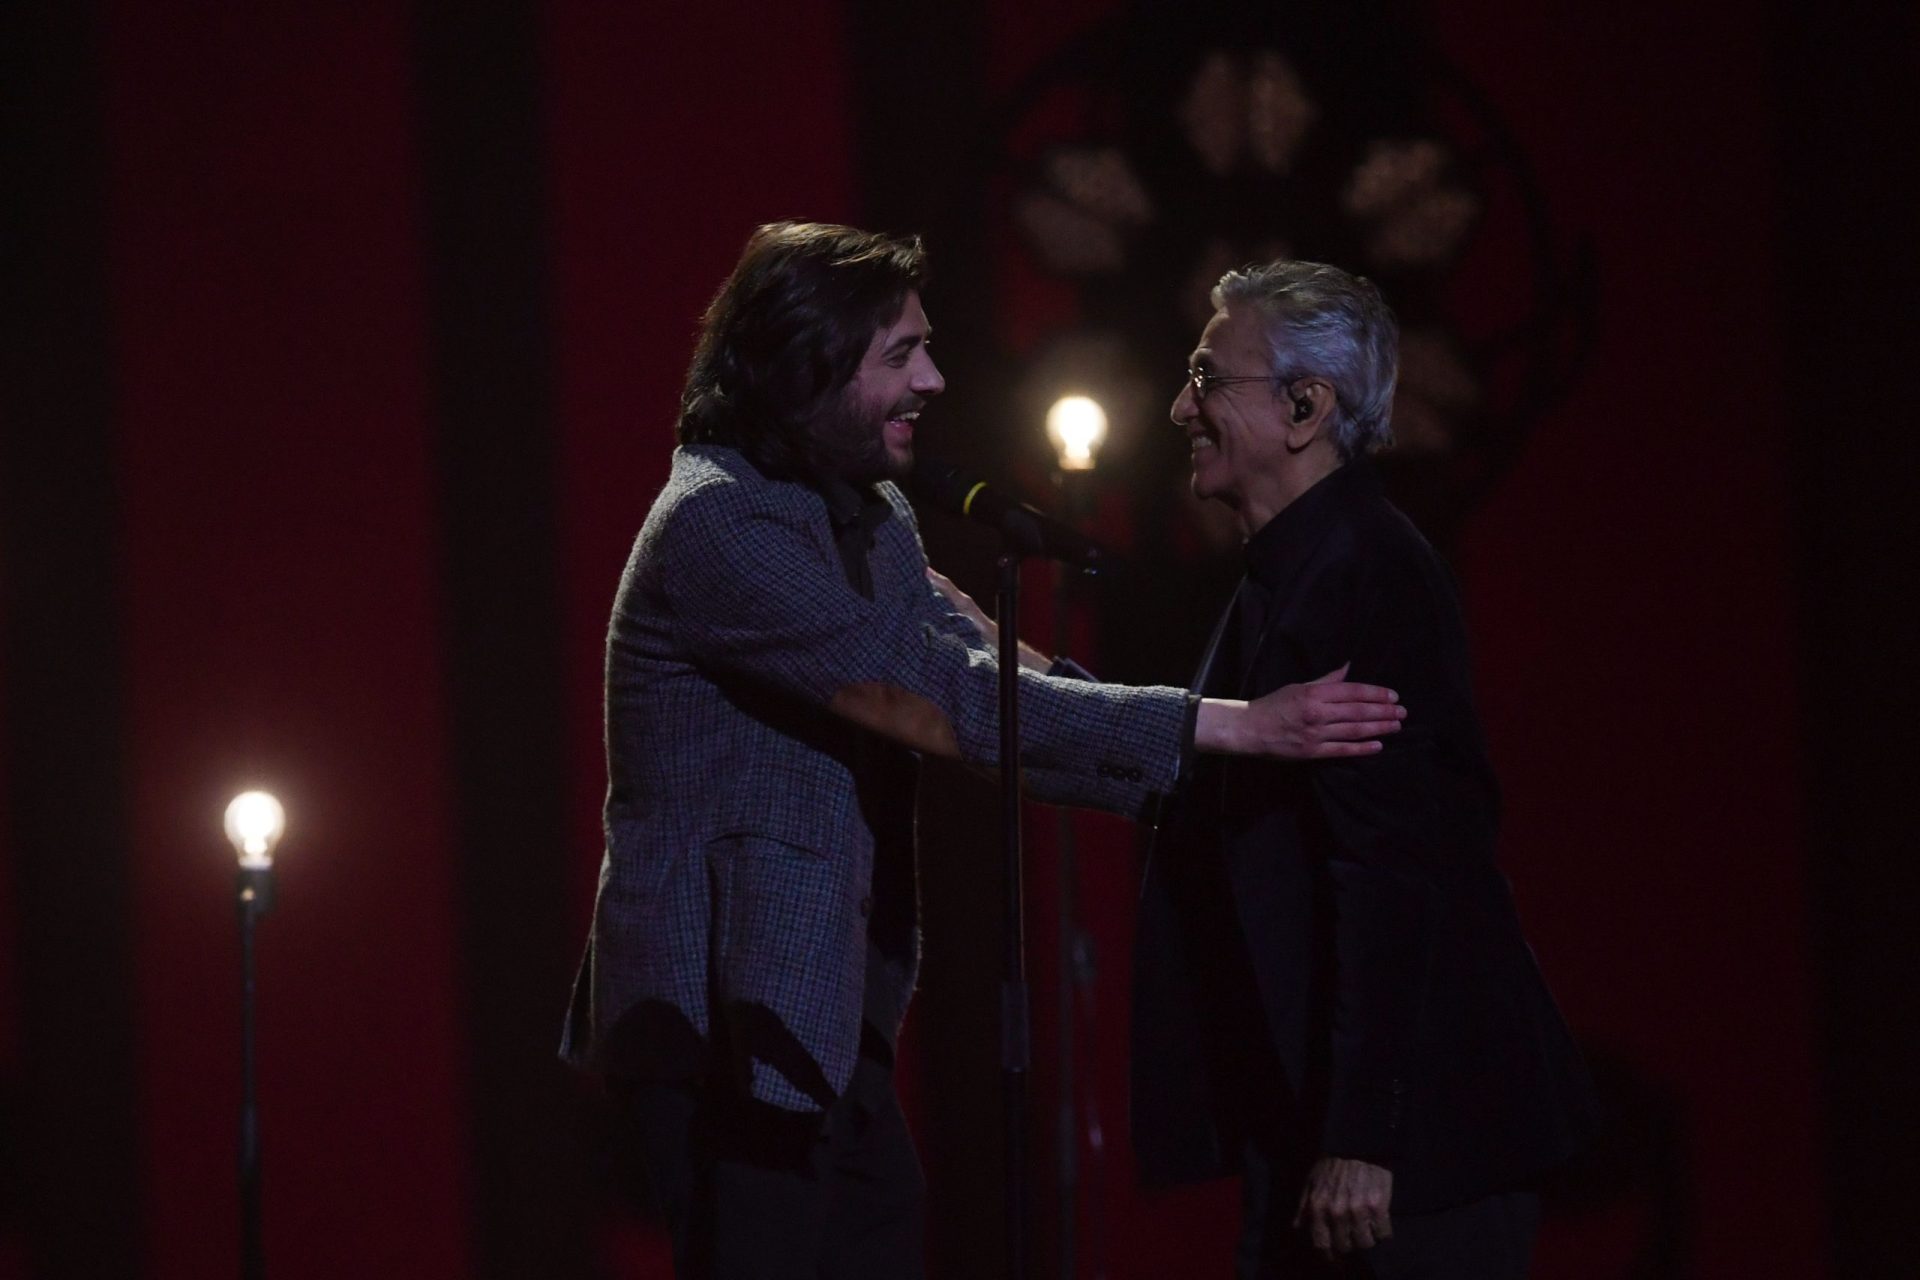 Eurovisão. Salvador Sobral e Caetano Veloso cantaram “Amar Pelos Dois” | VÍDEO